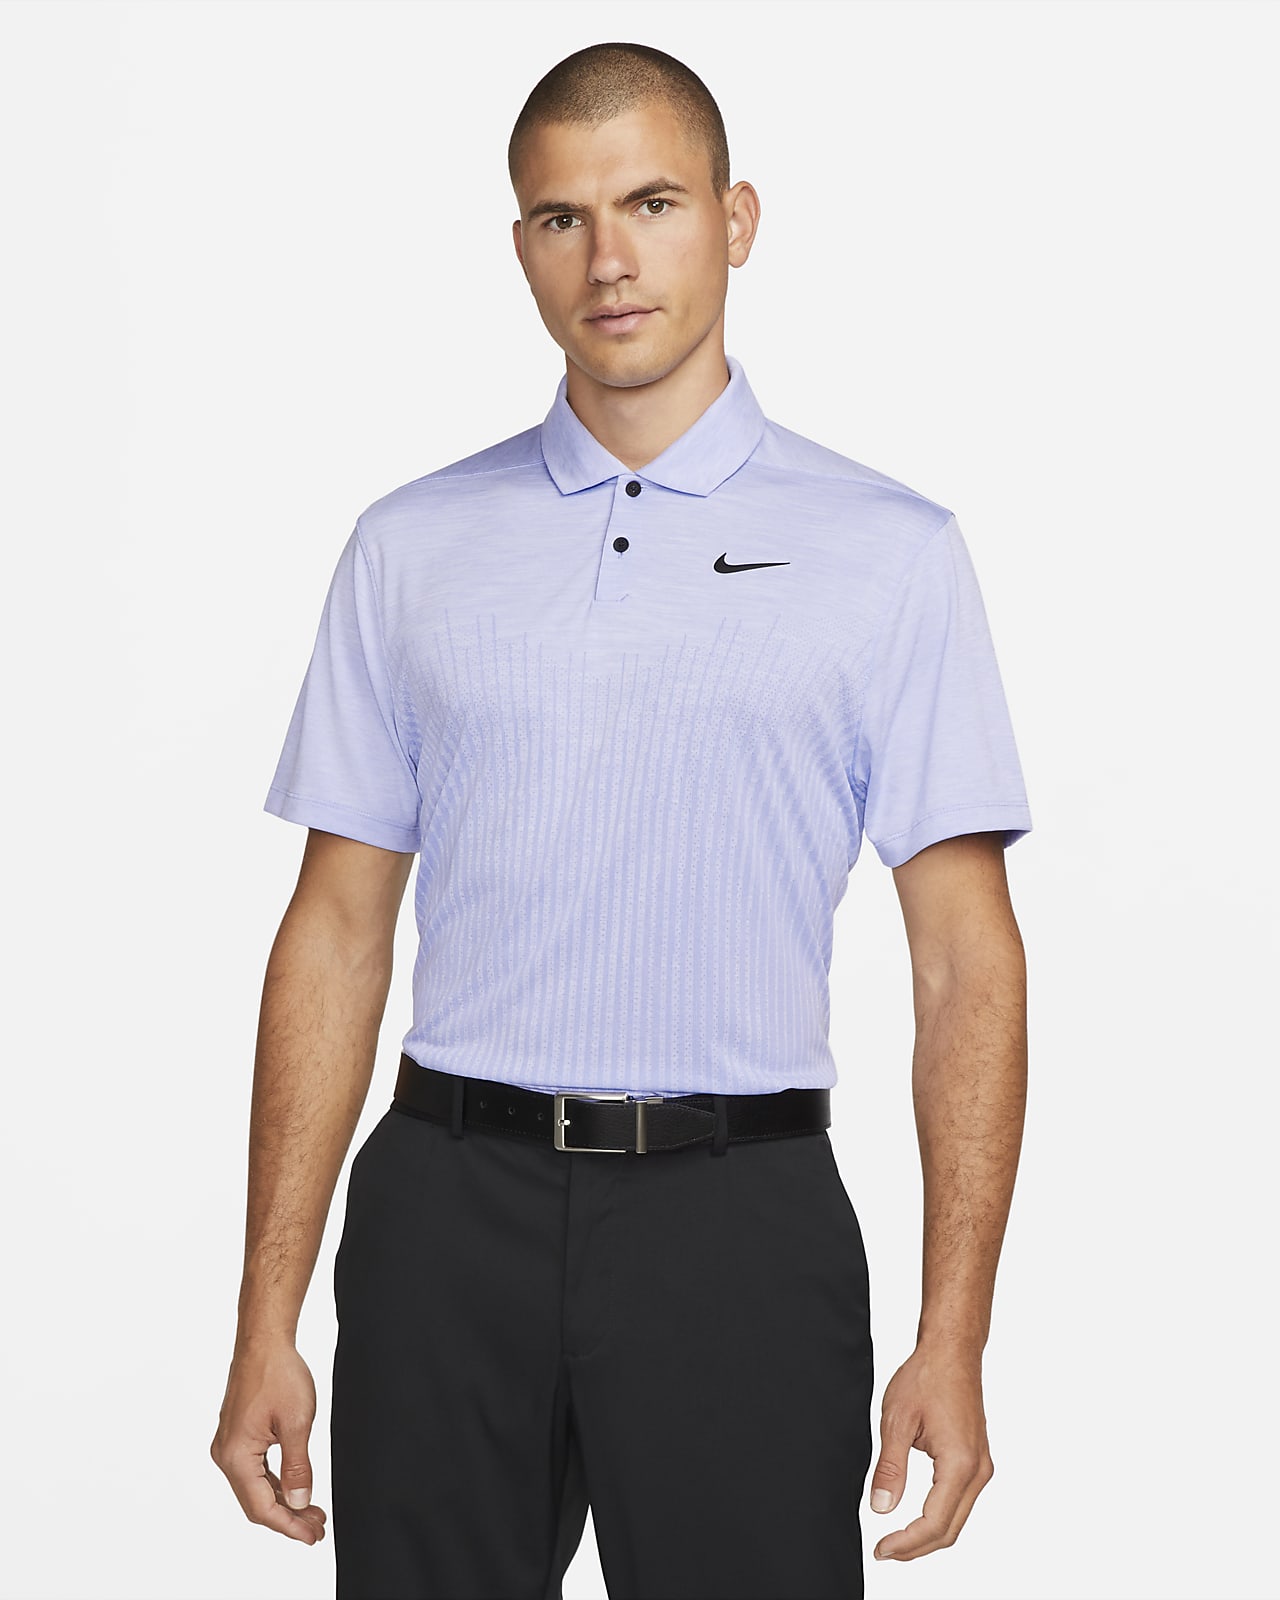 Nike Dri-FIT ADV Vapor speziell entwickeltes Golf-Poloshirt für Herren